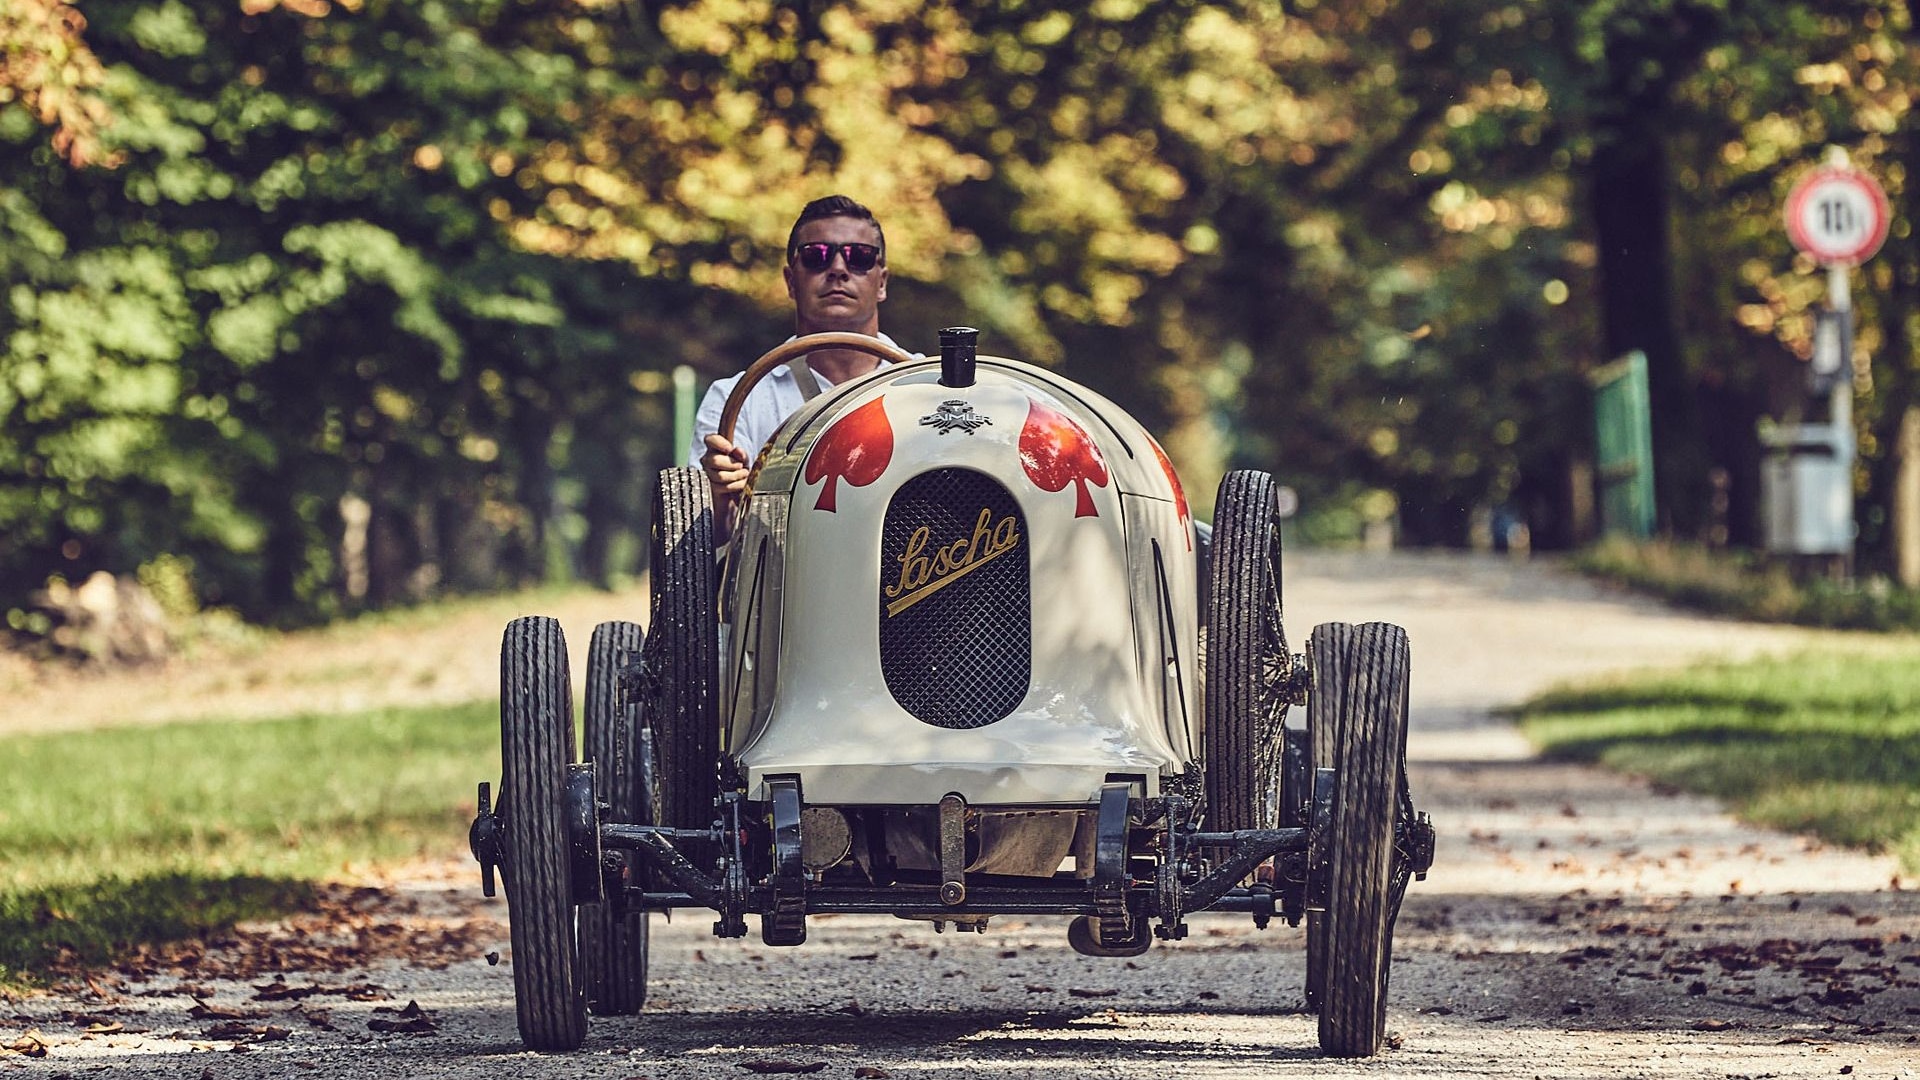 1922 Austro Daimler ADS-R race car “Sascha”